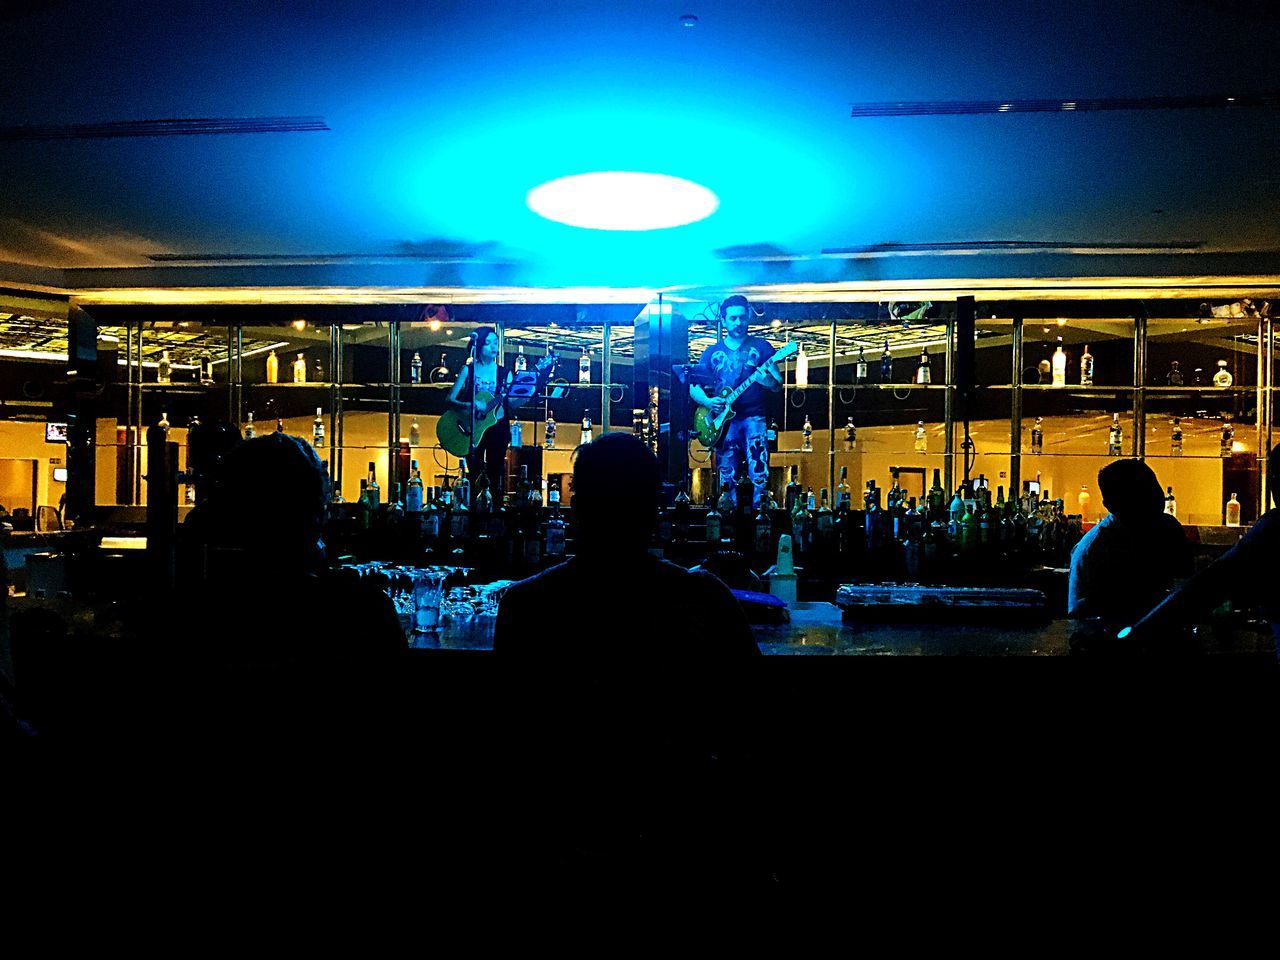 Sky Bar, Cancun, Mexico